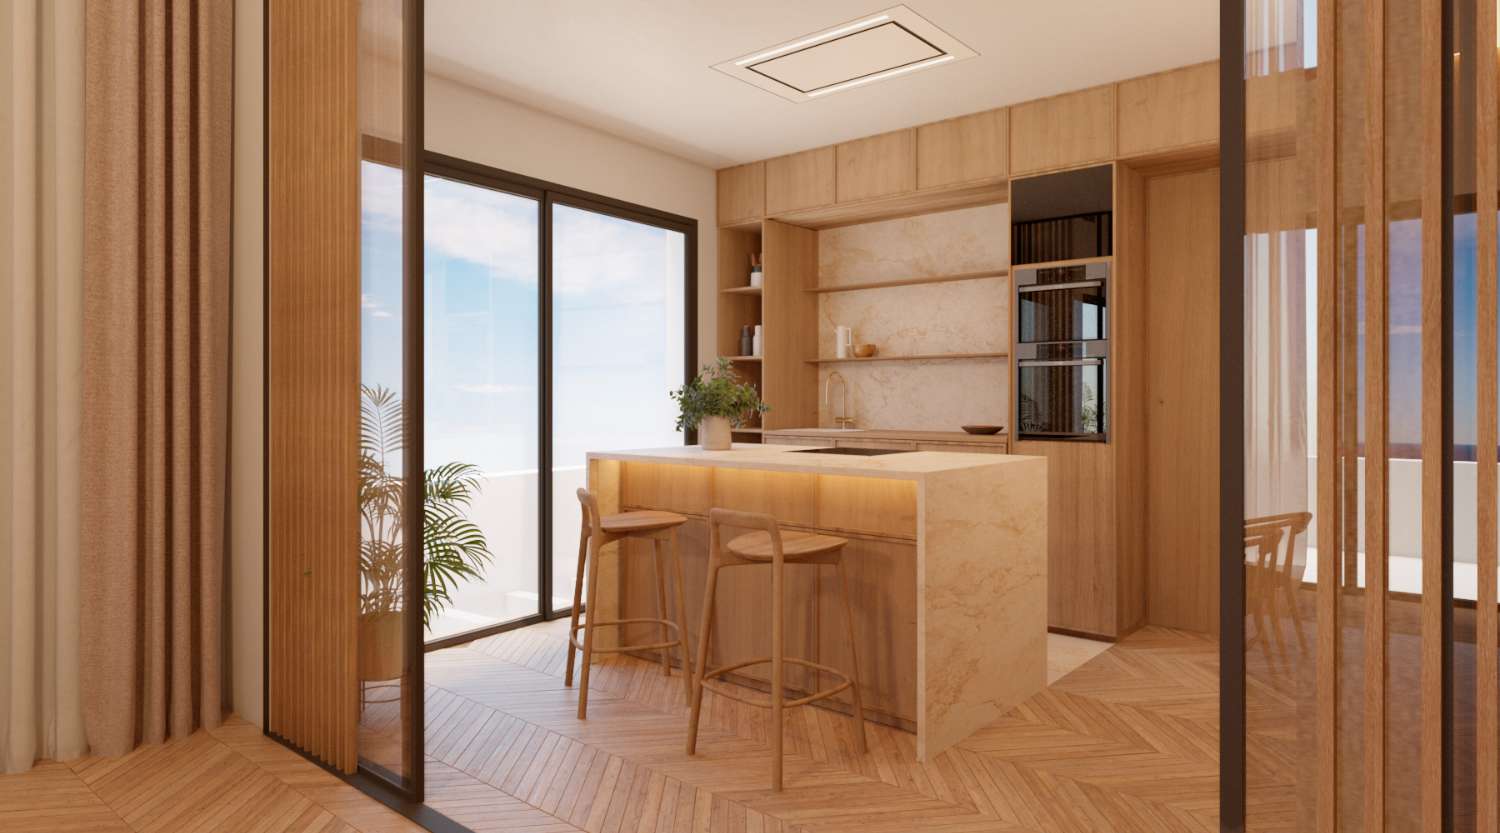 منازل فاخرة جديدة تمامًا مكونة من 3 غرف نوم مع إطلالات على البحر، آخر 4 وحدات! من 2,250,000 يورو